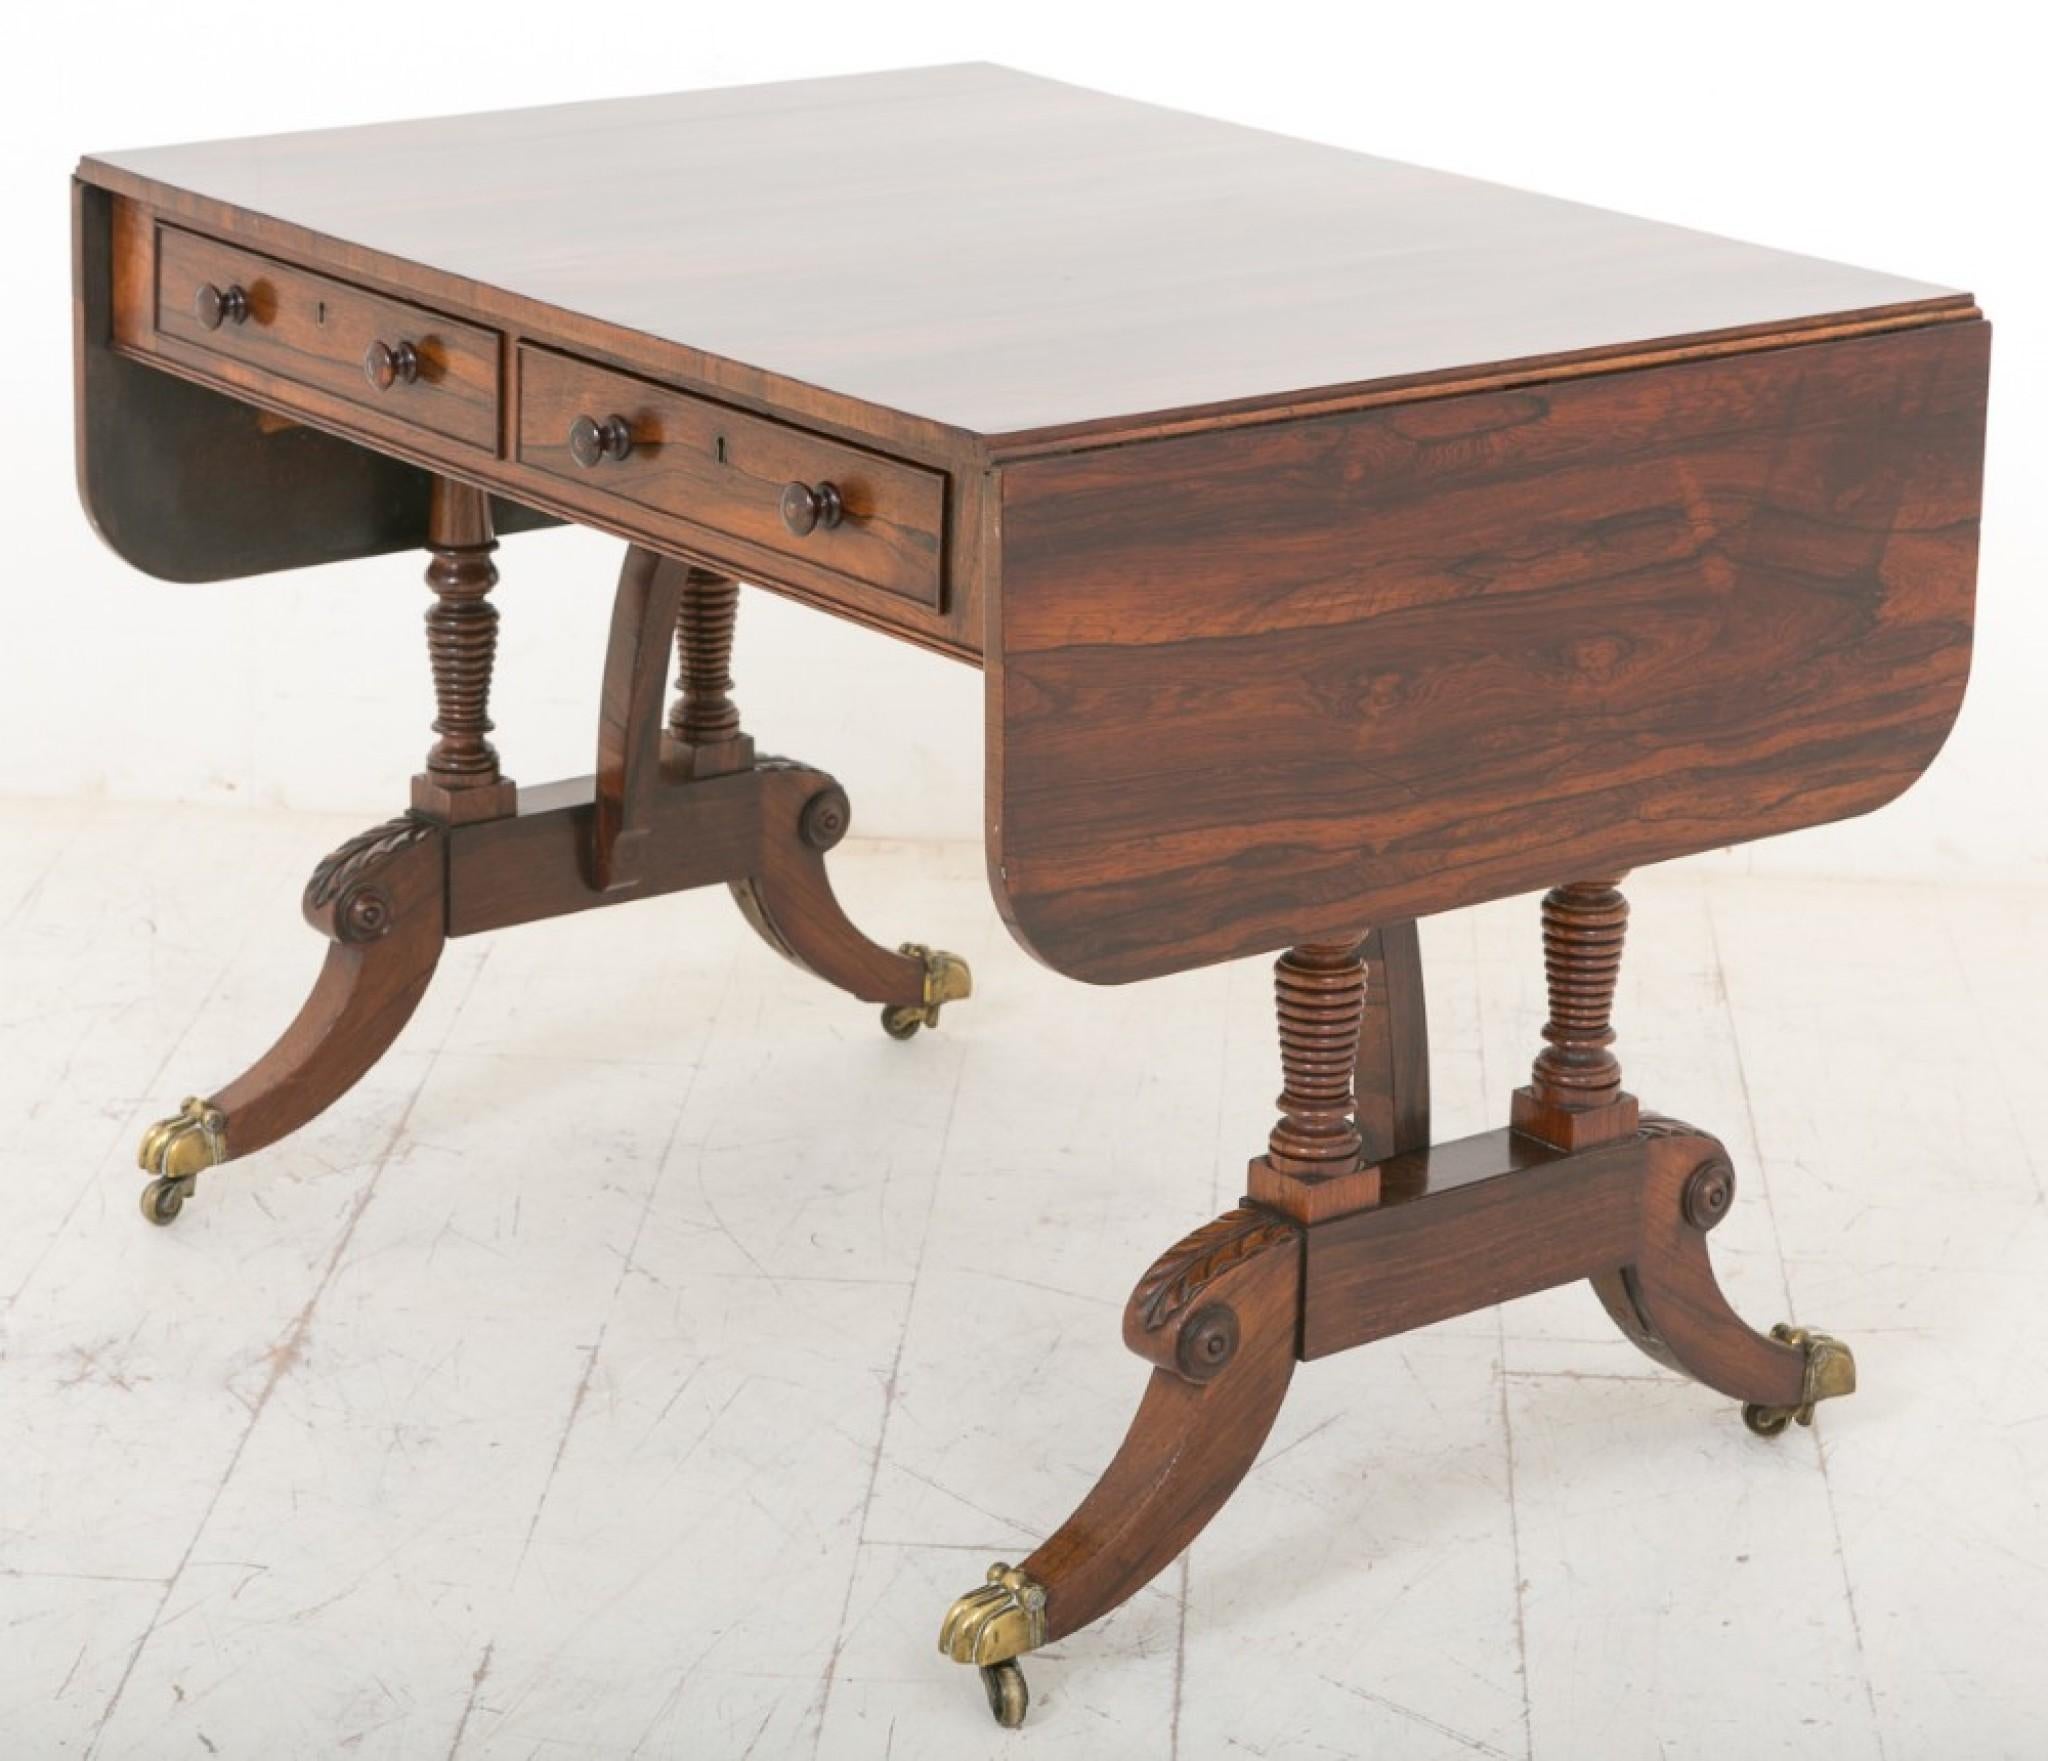 Ein hervorragender Qualität Palisander Sofa Tisch.
19. Jahrhundert
Auf Messinggussrollen stehend, mit einem geschwungenen Bein mit geschnitzten Knien und gedrechselten Stützen.
Dieses Stück verfügt über 2 x Mahagoni gefüttert arbeiten Schubladen mit